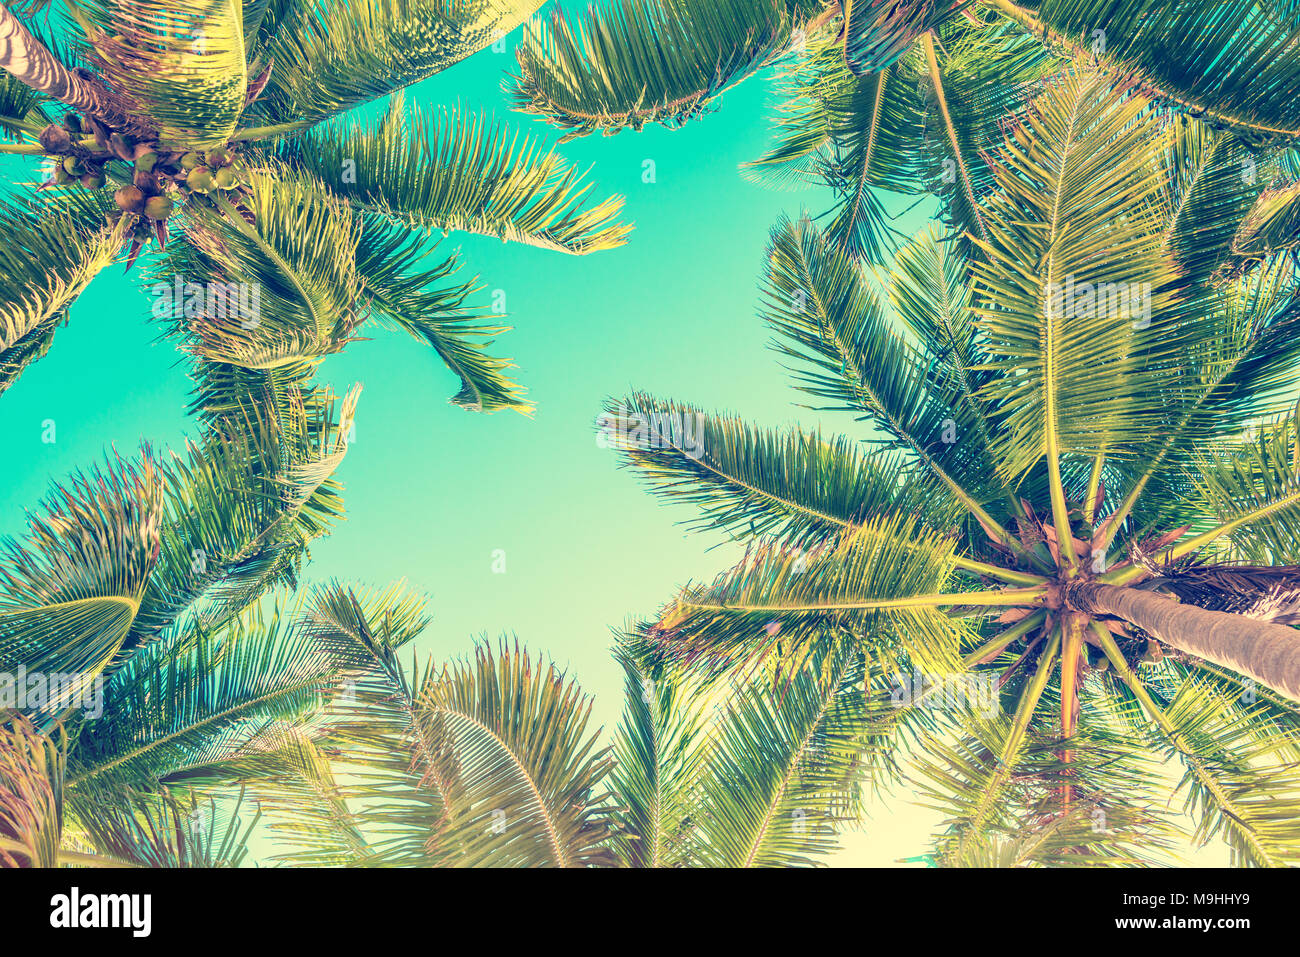 Ciel bleu et de palmiers Vue de dessous, style vintage, fond d'été Banque D'Images